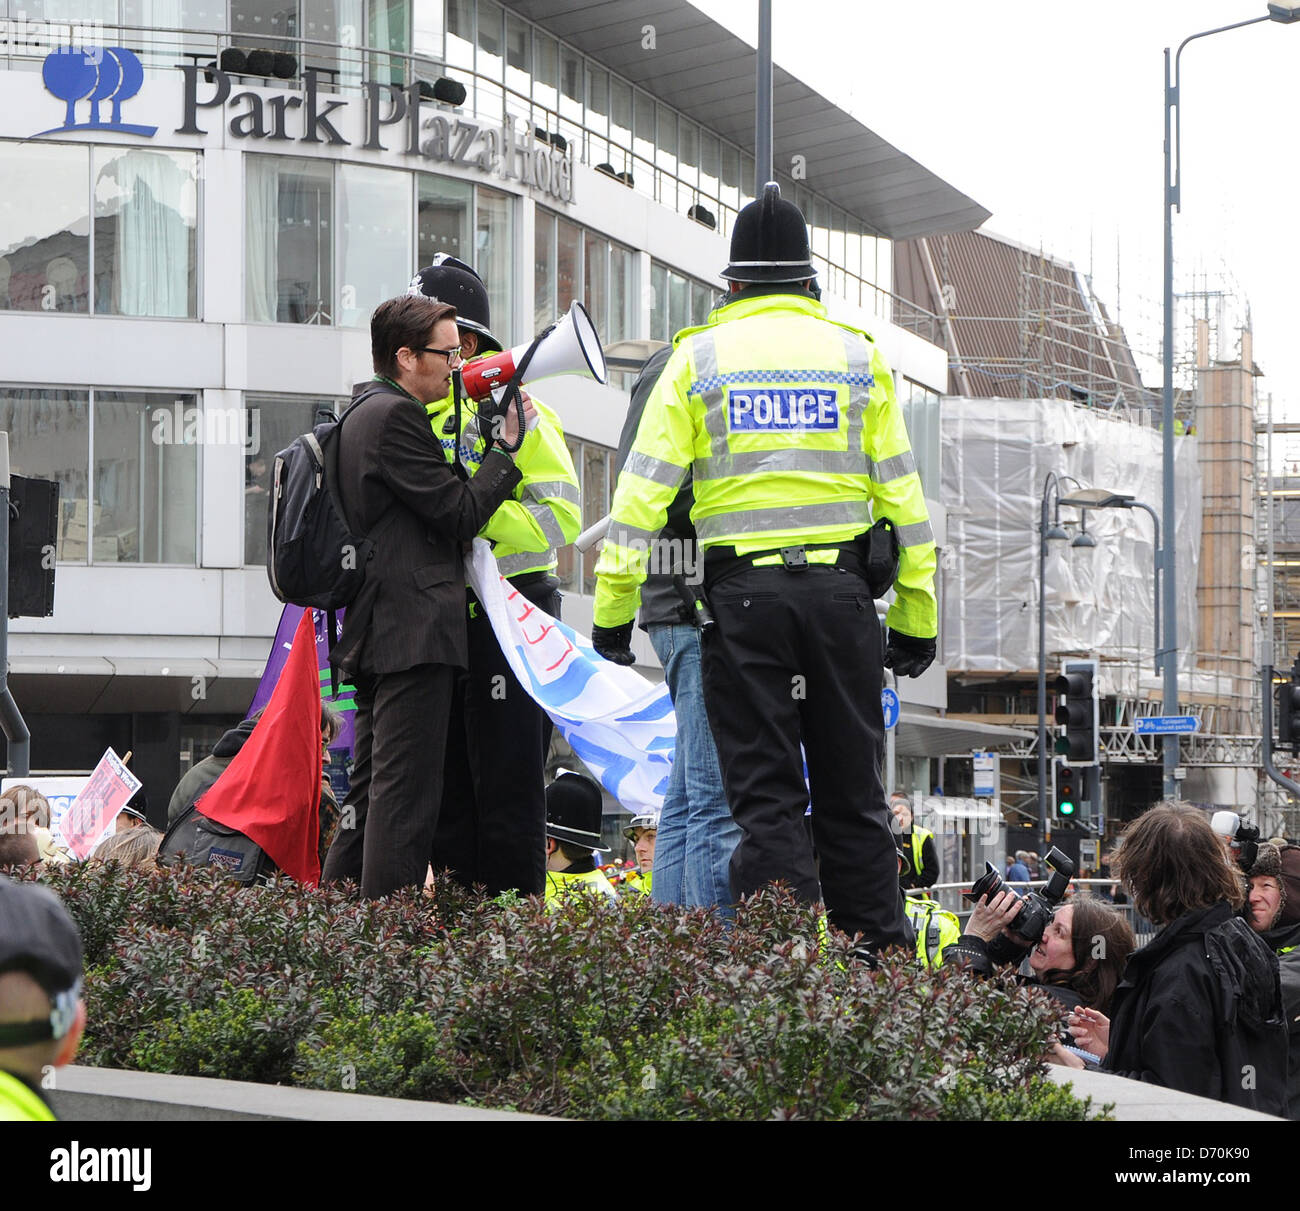 Stimmung gegen die Regierung schneiden Demonstranten versammeln sich in der Innenstadt von Leeds zu protestieren vor The Queens Hotel während der konservative lokale Regierung Konferenz Leeds, England - 25.02.12 Stockfoto